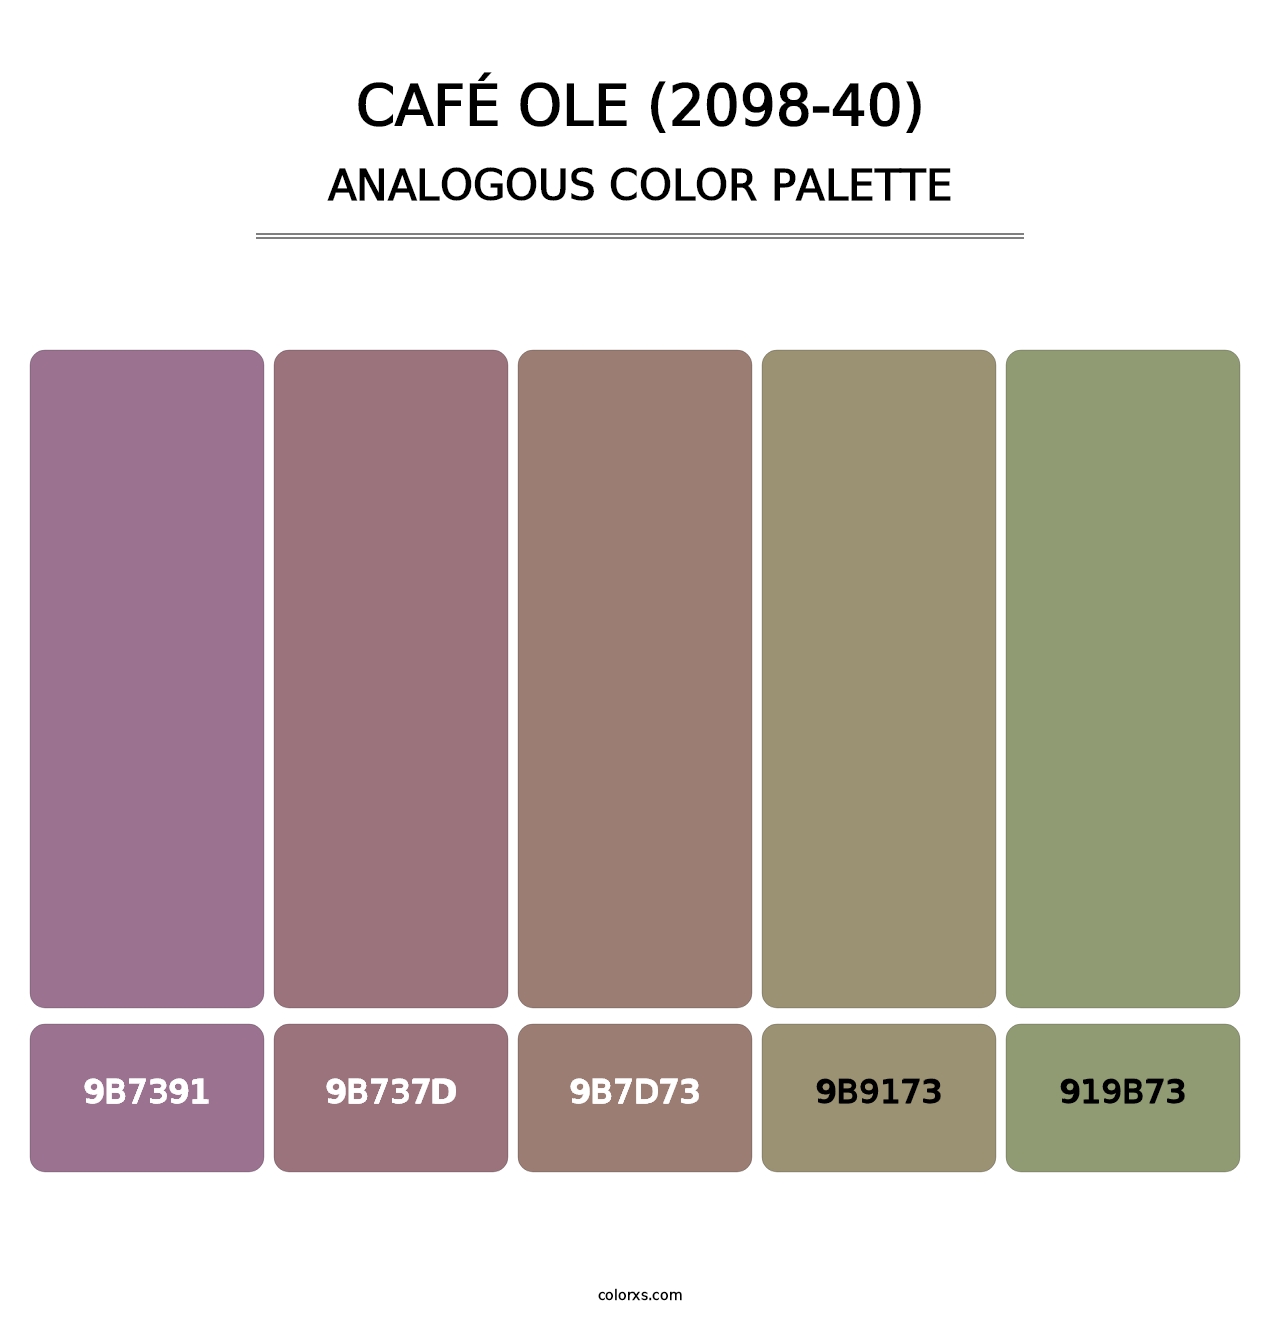 Café Ole (2098-40) - Analogous Color Palette